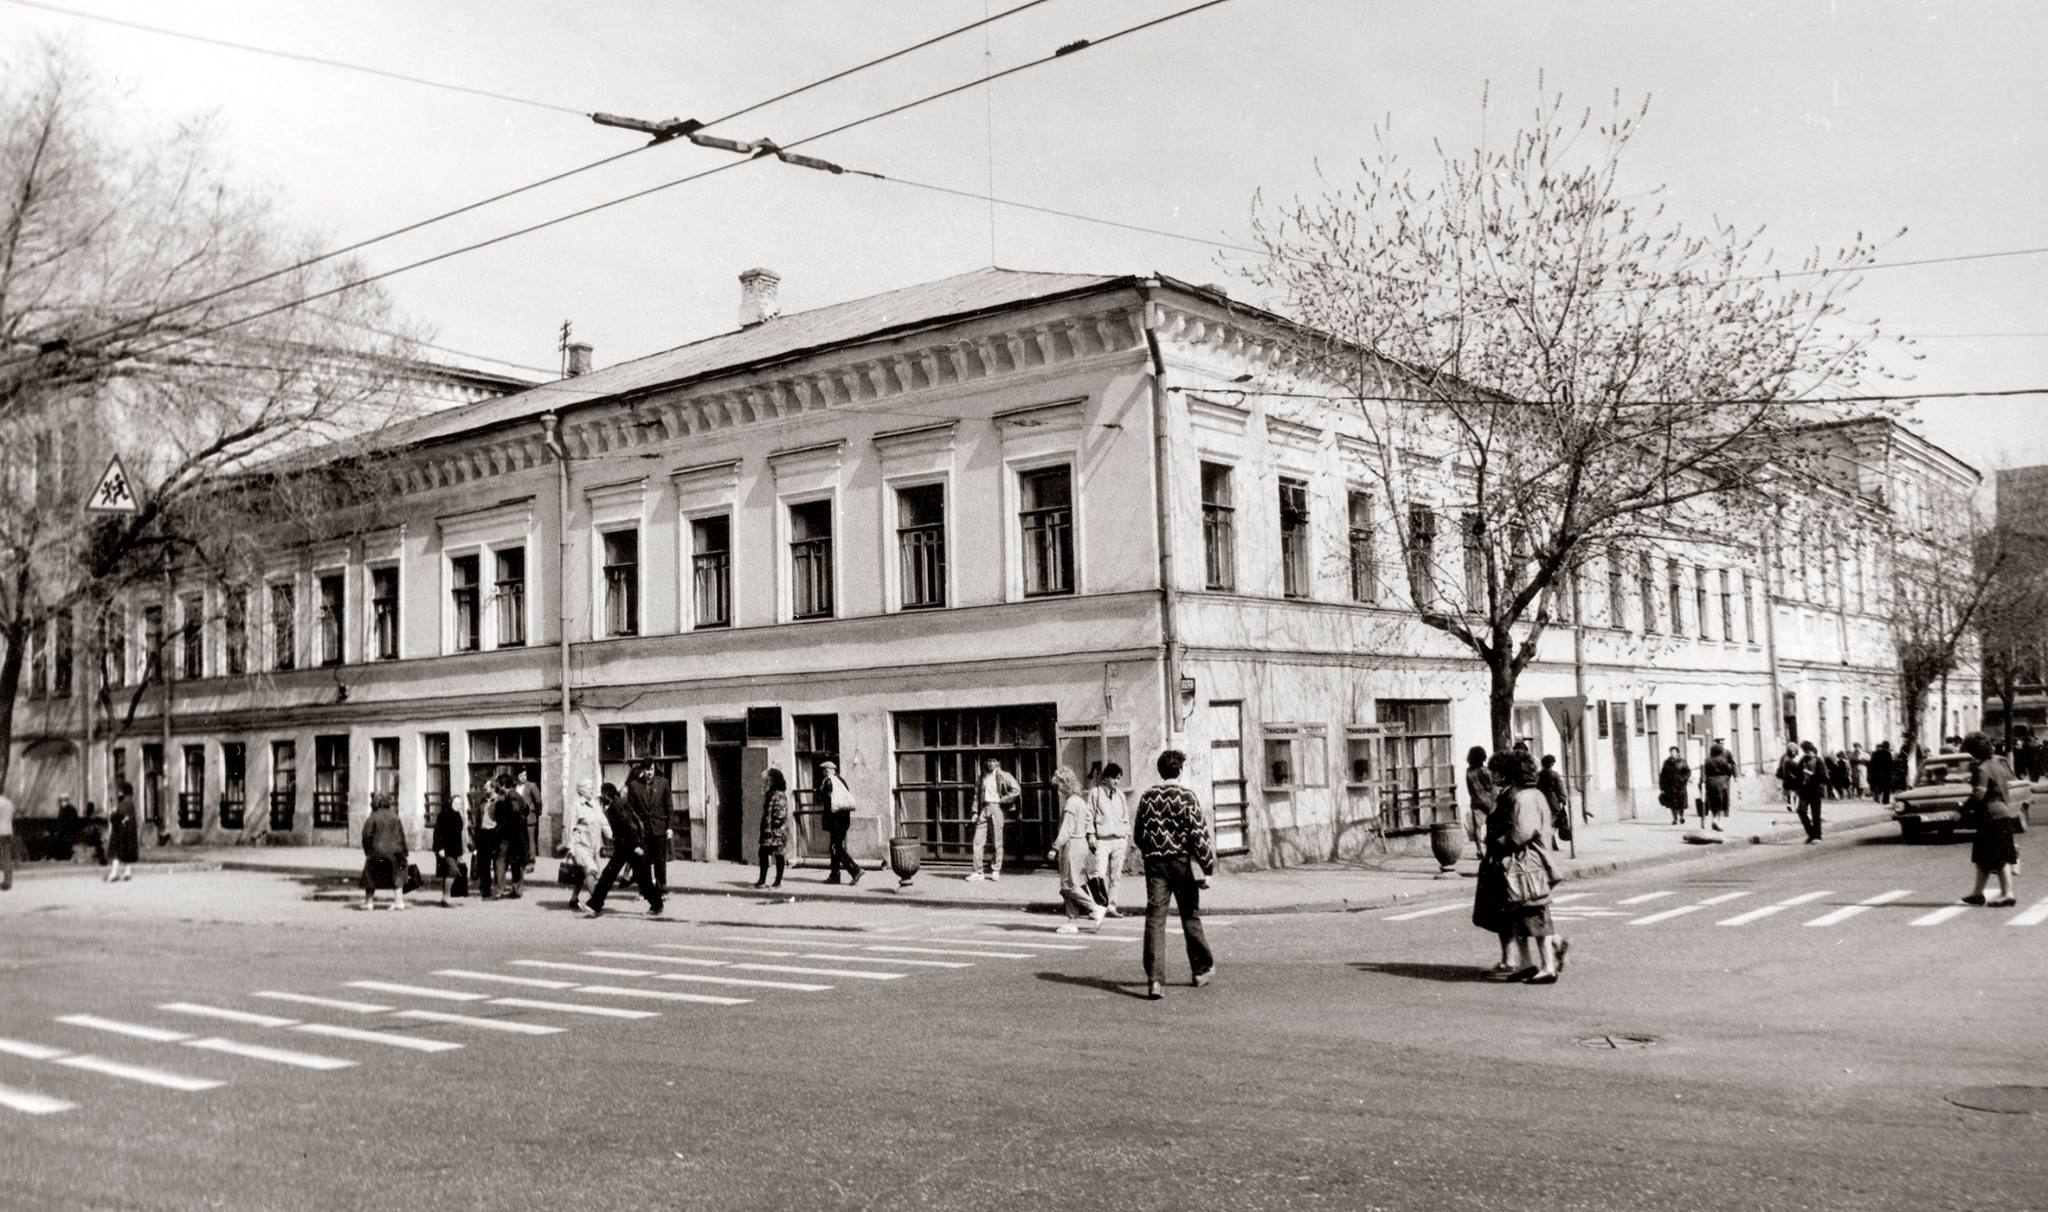 Дом 79 (Ресторан Корнилова) на углу пл Революции и Венцека, ул. Куйбышева, Самара, 1970 е гг